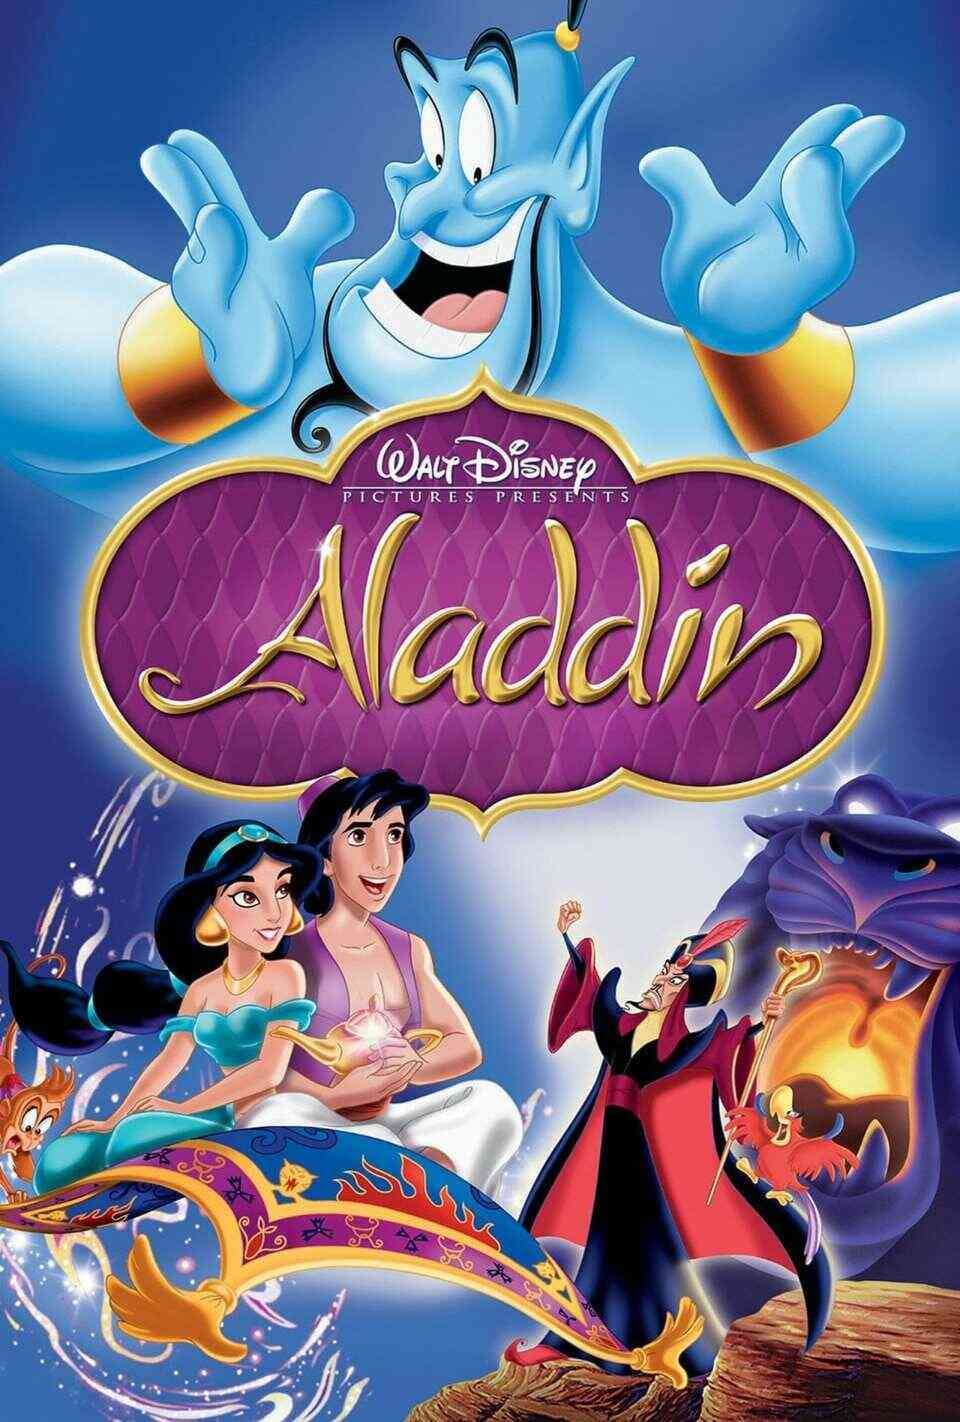 Read Aladdin screenplay (poster)